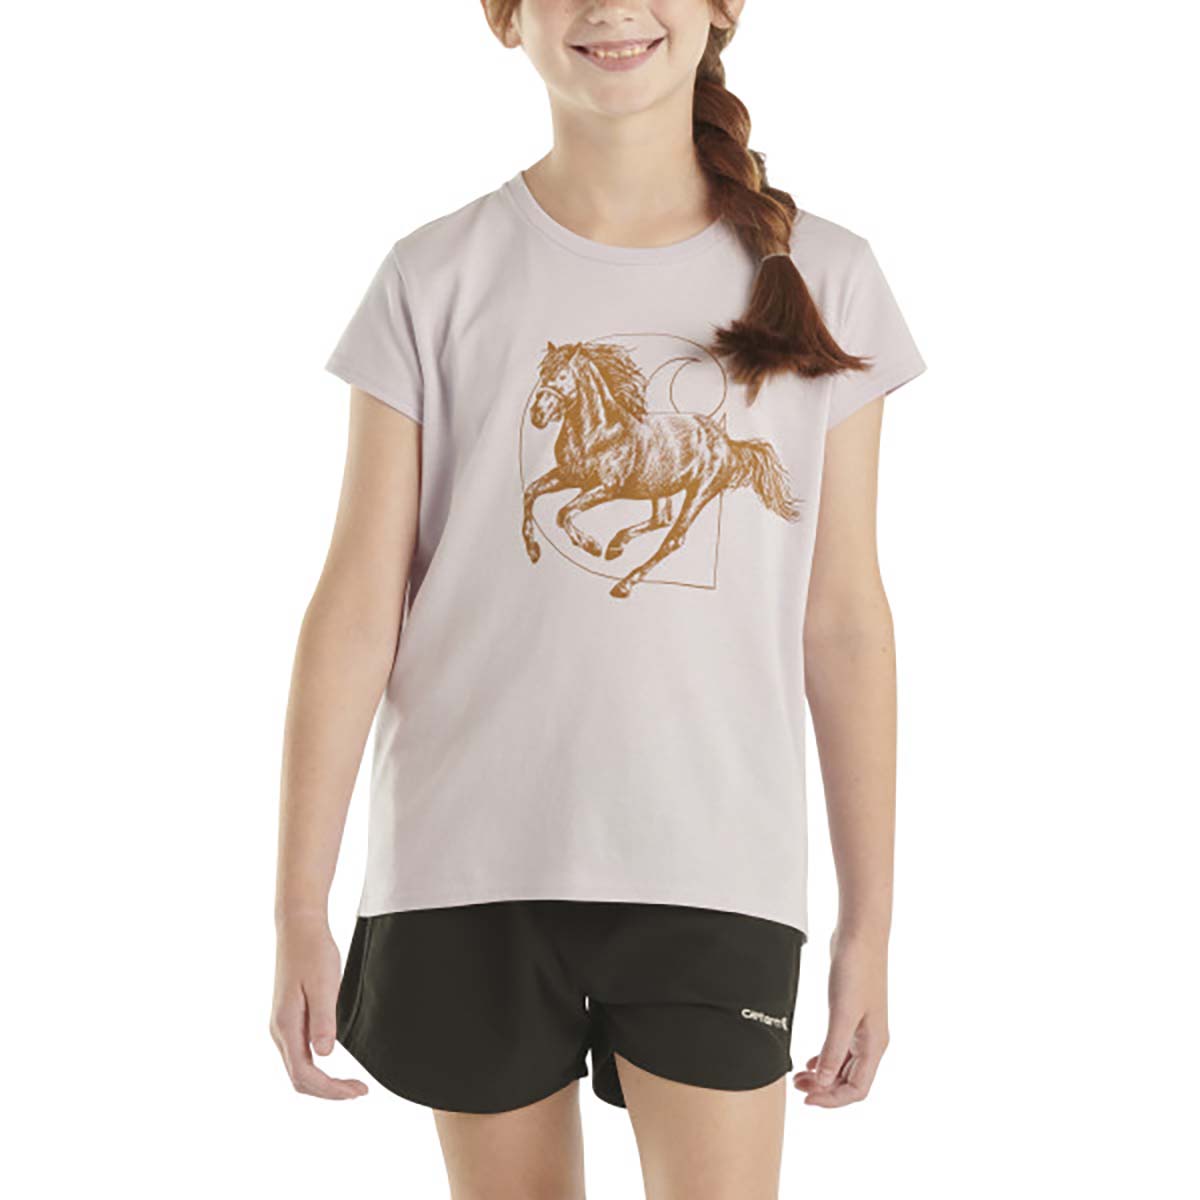 Carhartt Girls' Short Sleeve Horse T-Shirt